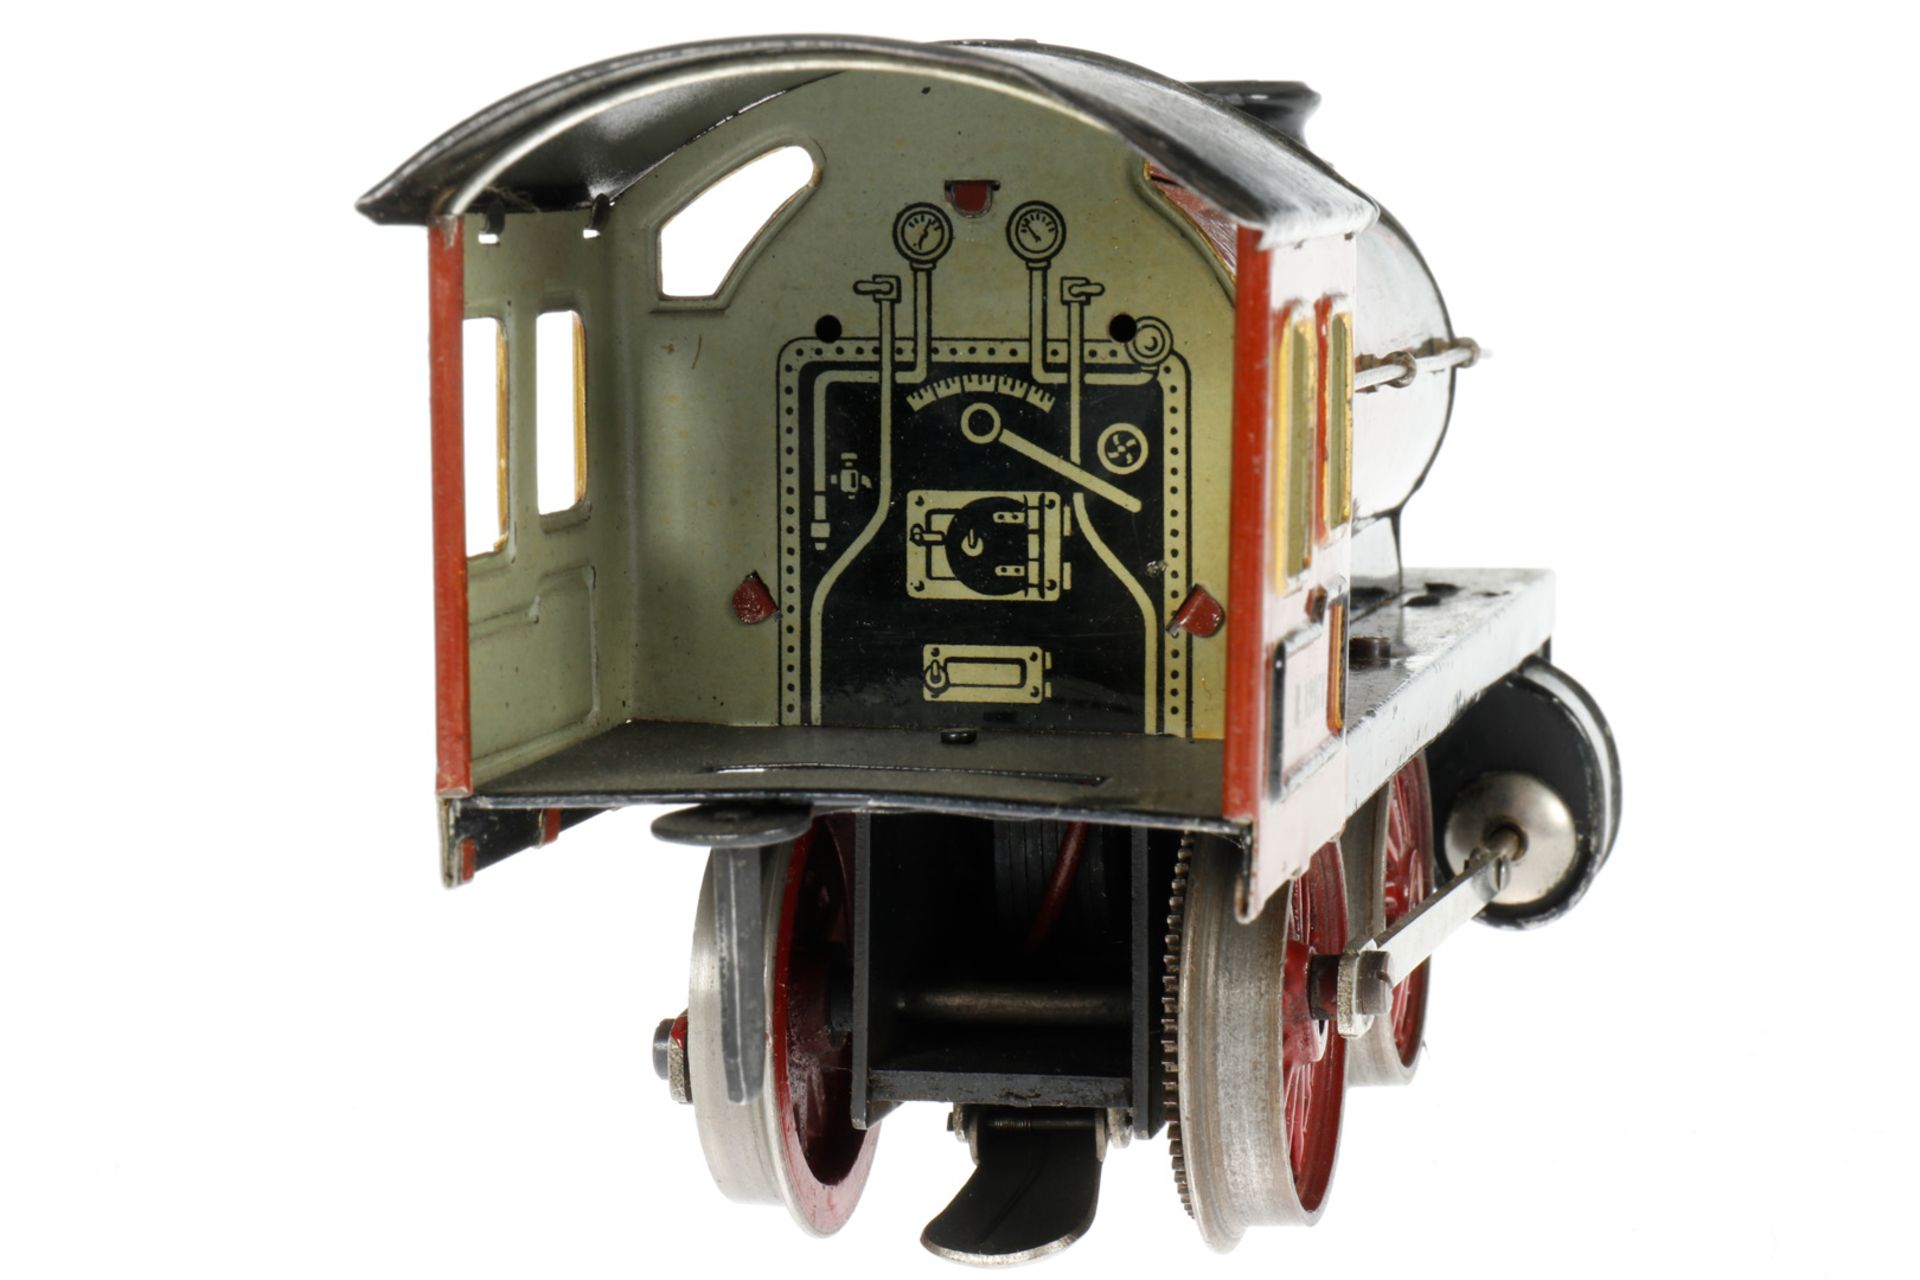 Märklin B-Dampflok R 12971, S 1, elektr., braun/schwarz, mit Tender und 1 el. bel. Stirnlampe, LS tw - Bild 3 aus 7